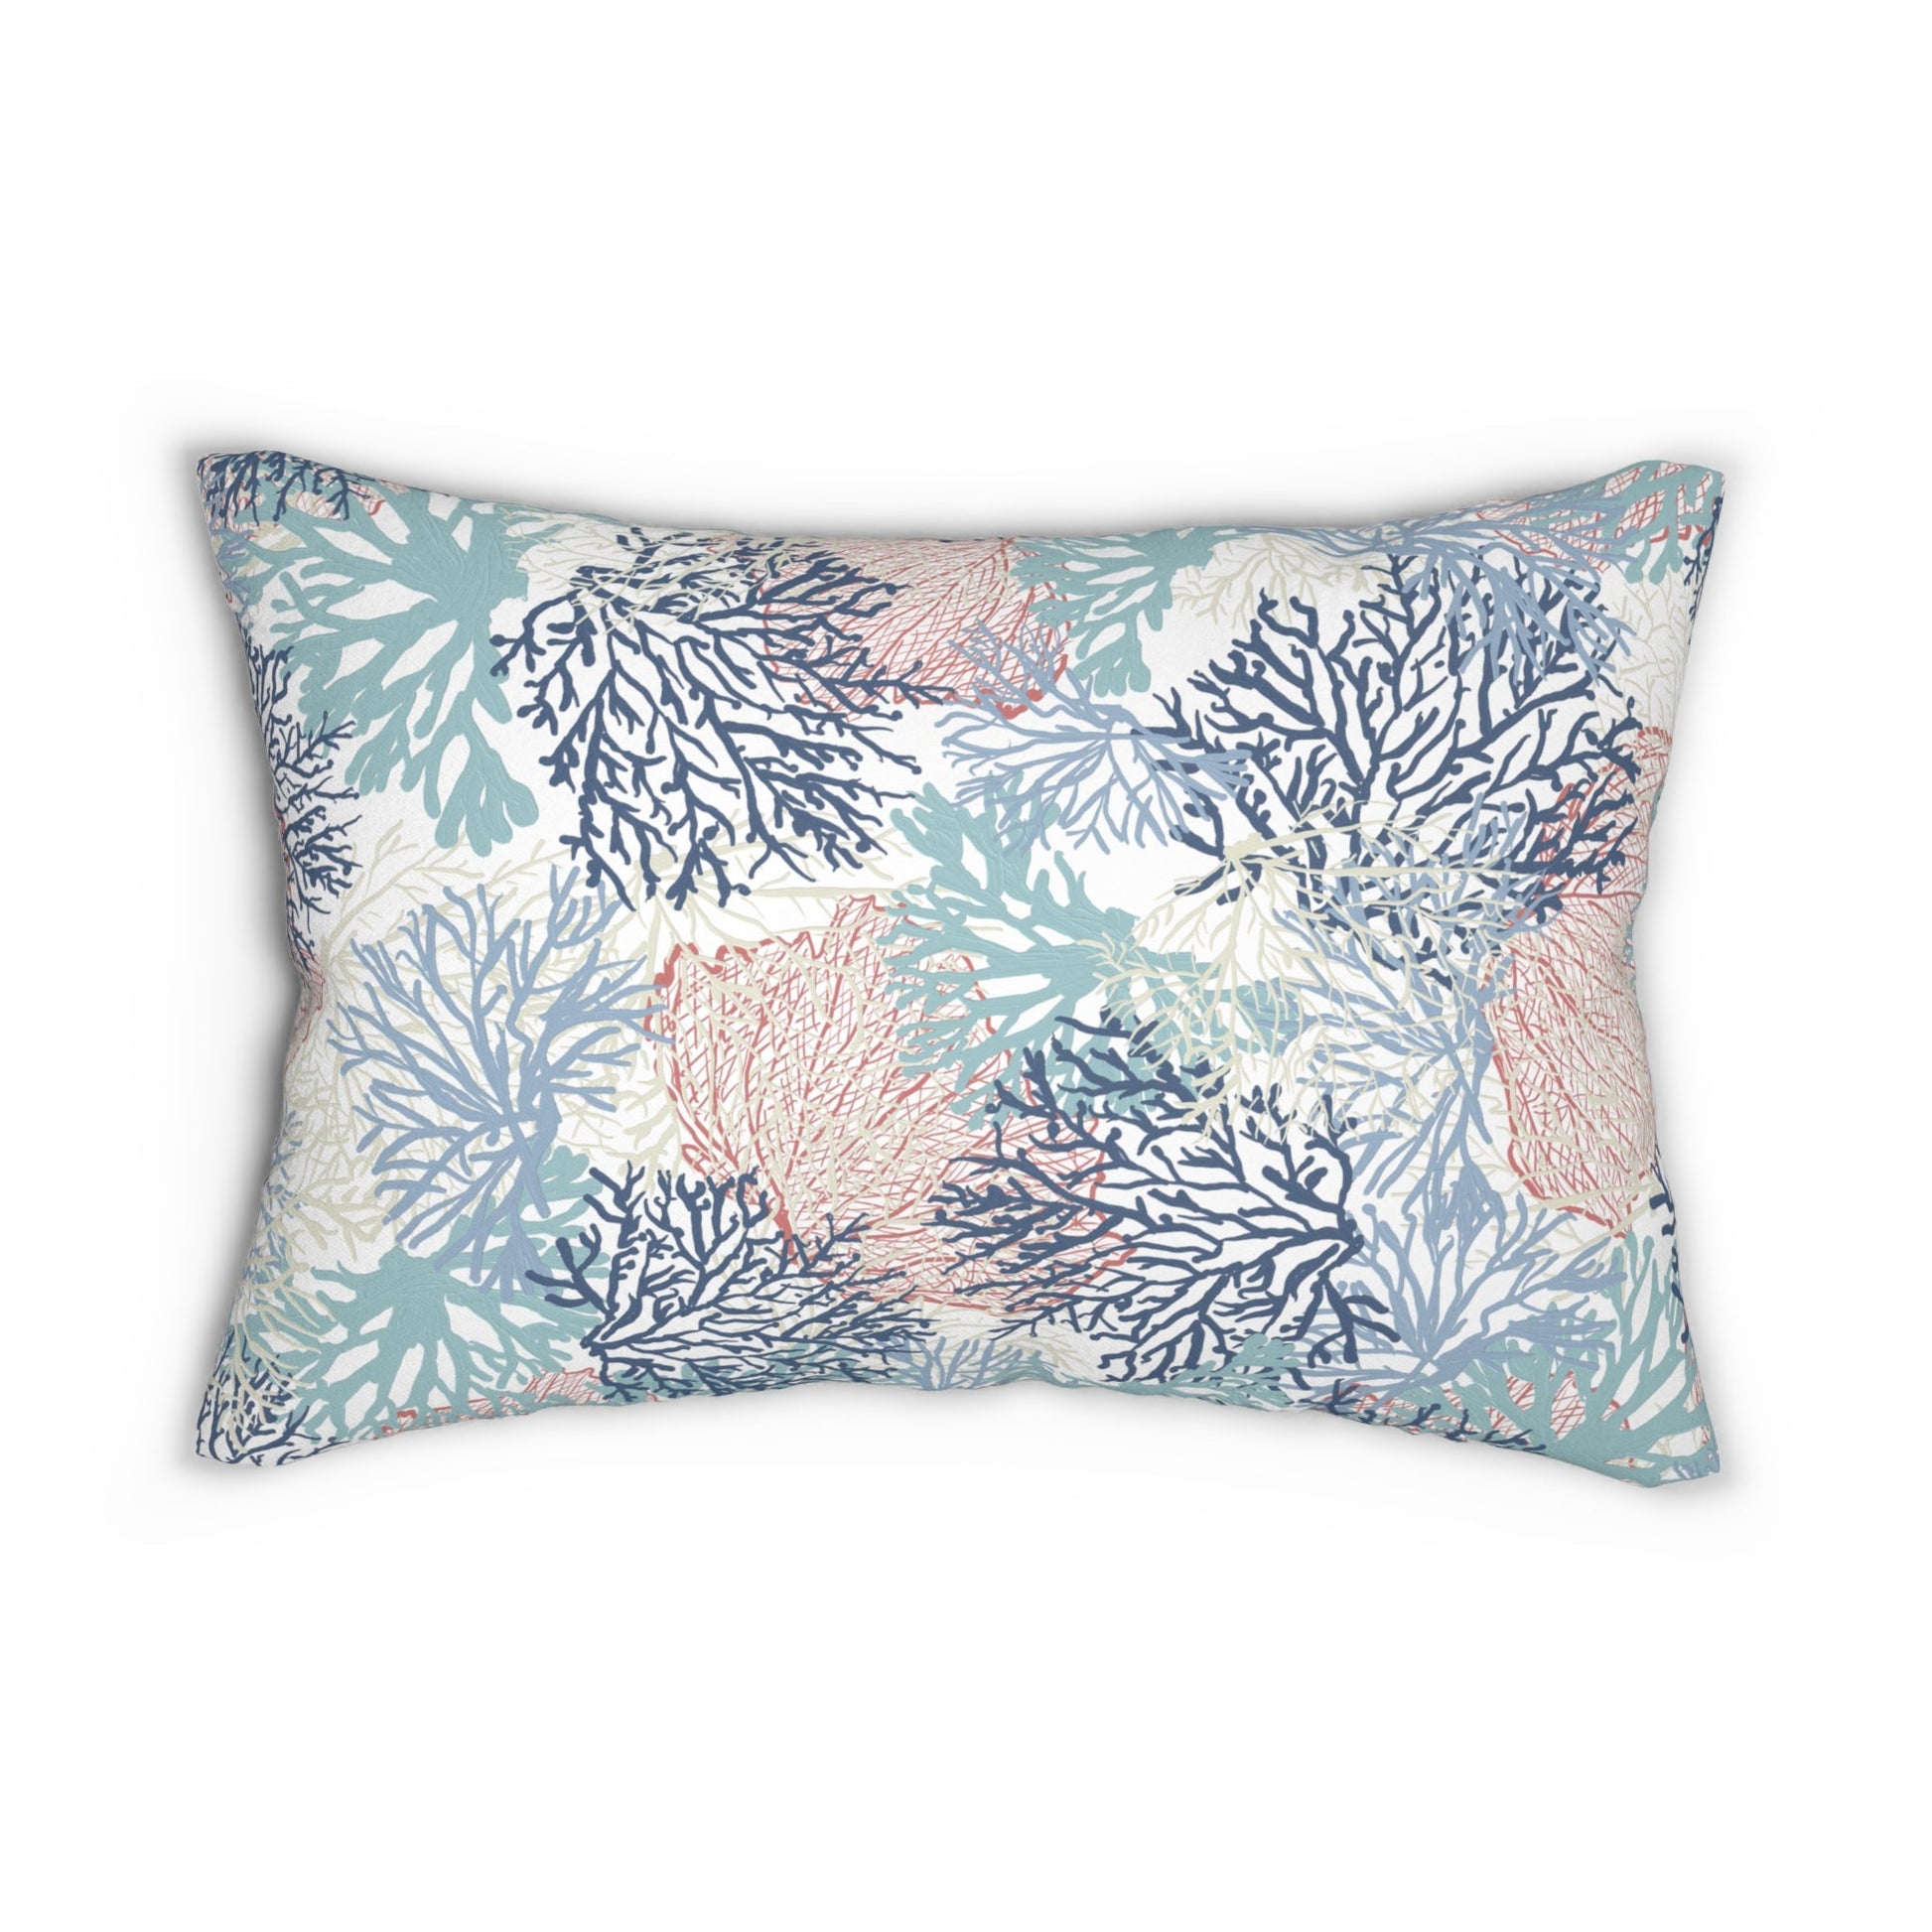 Coral Spun Polyester Lumbar Pillow - Blue Cava